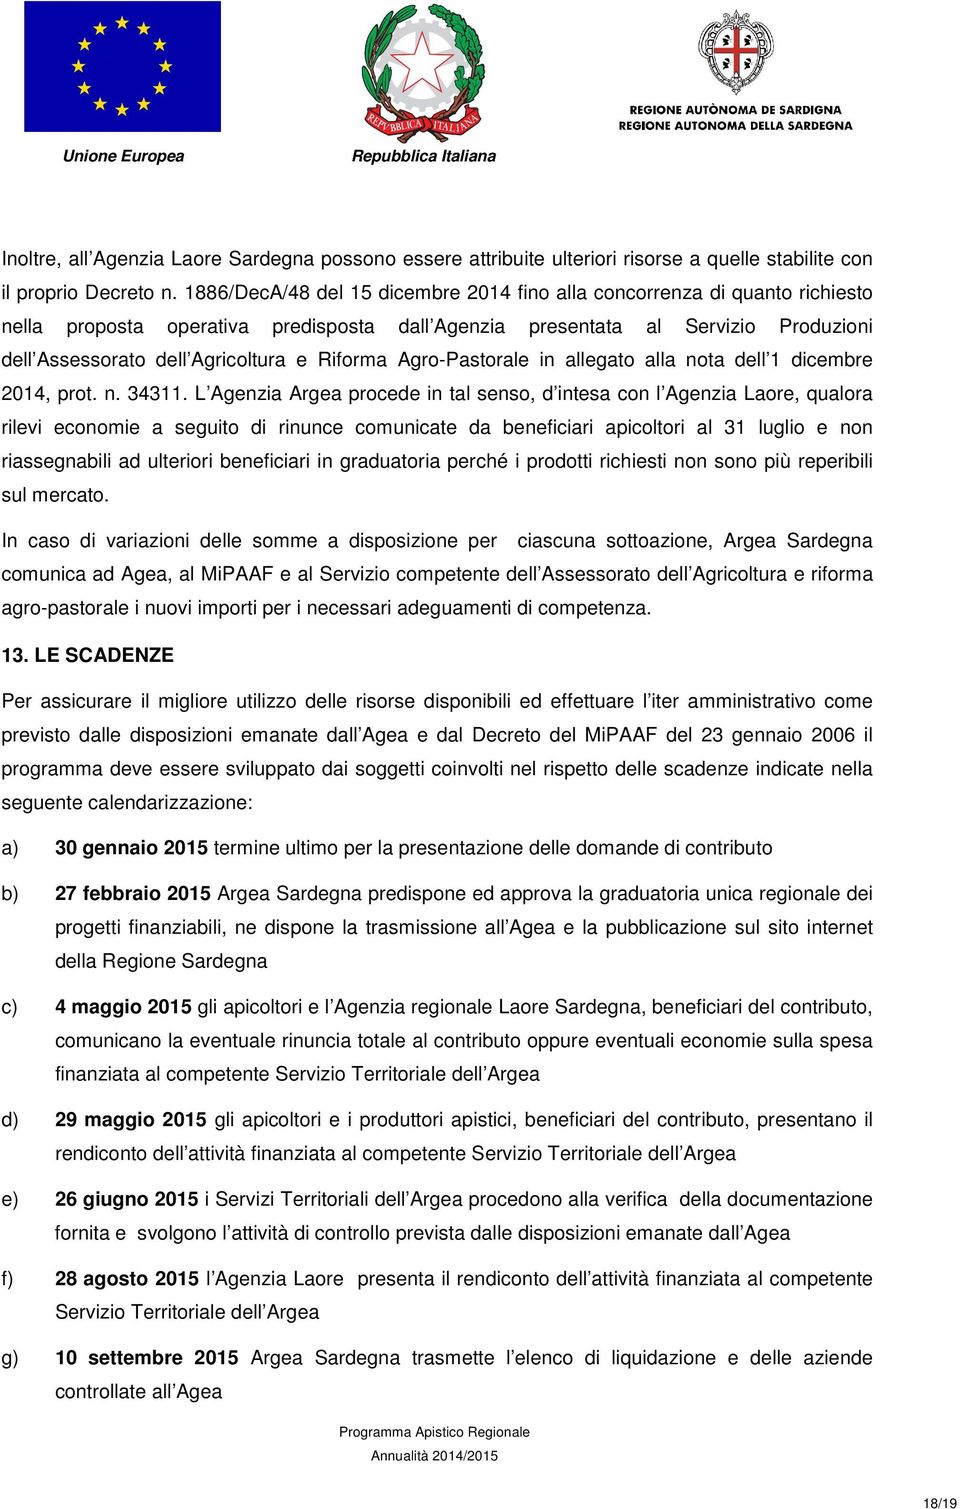 Riforma Agro-Pastorale in allegato alla nota dell 1 dicembre 2014, prot. n. 34311.